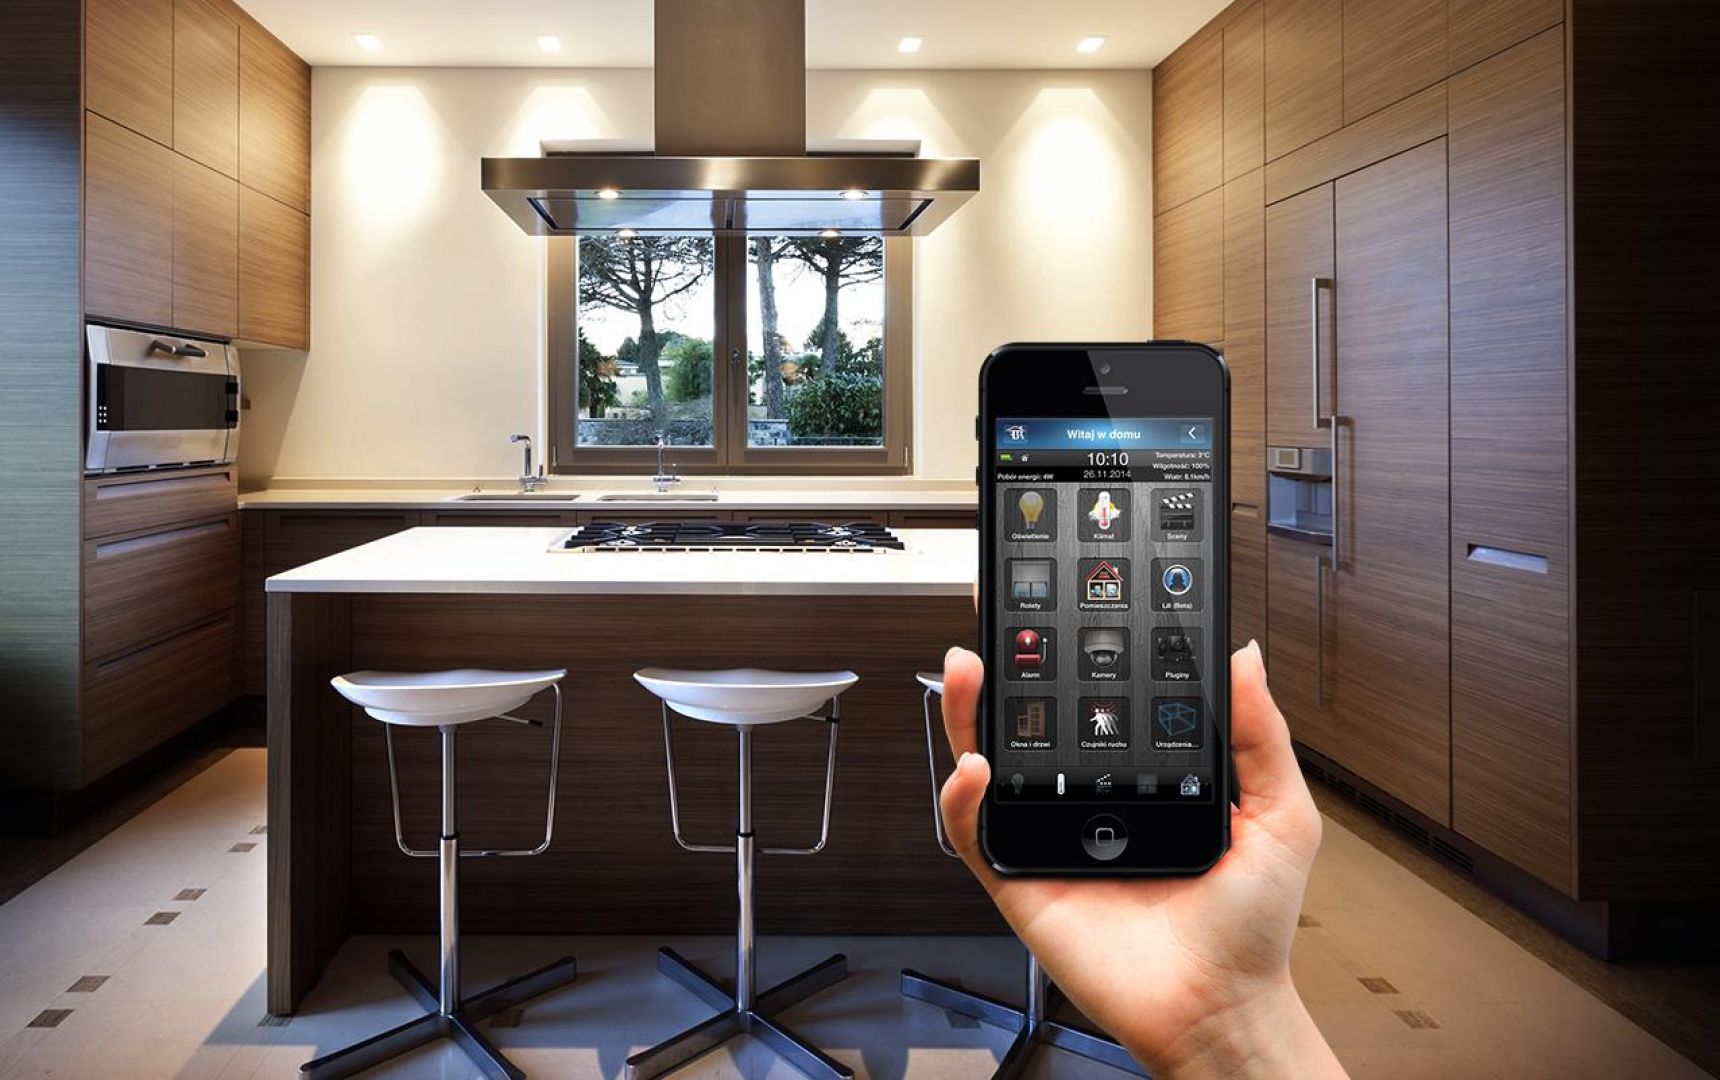 Systemy smart home to zespoły komunikujących się ze sobą urządzeń, które podłączone do wspólnej sieci zarządzają funkcjami domu i mieszkania. Fot. Fibaro